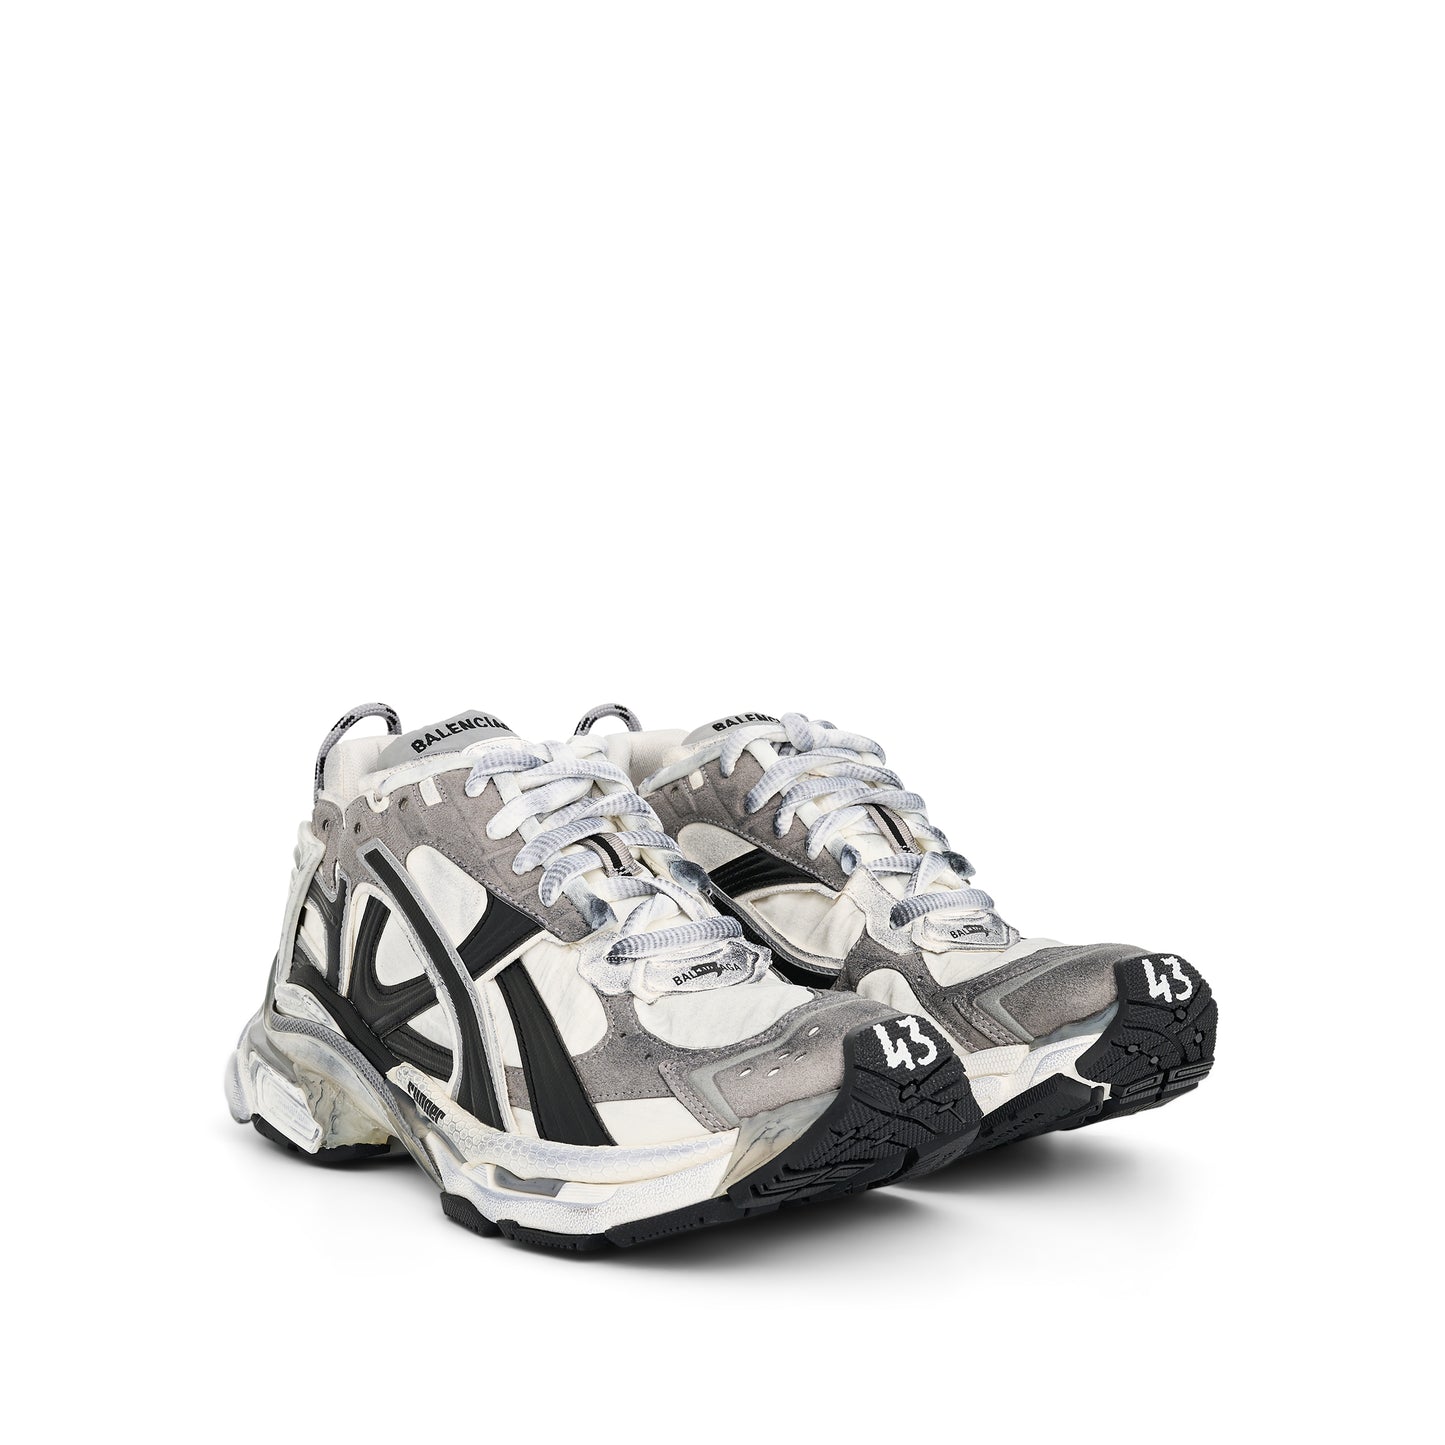 Runner Sneaker in Grey/White/Black